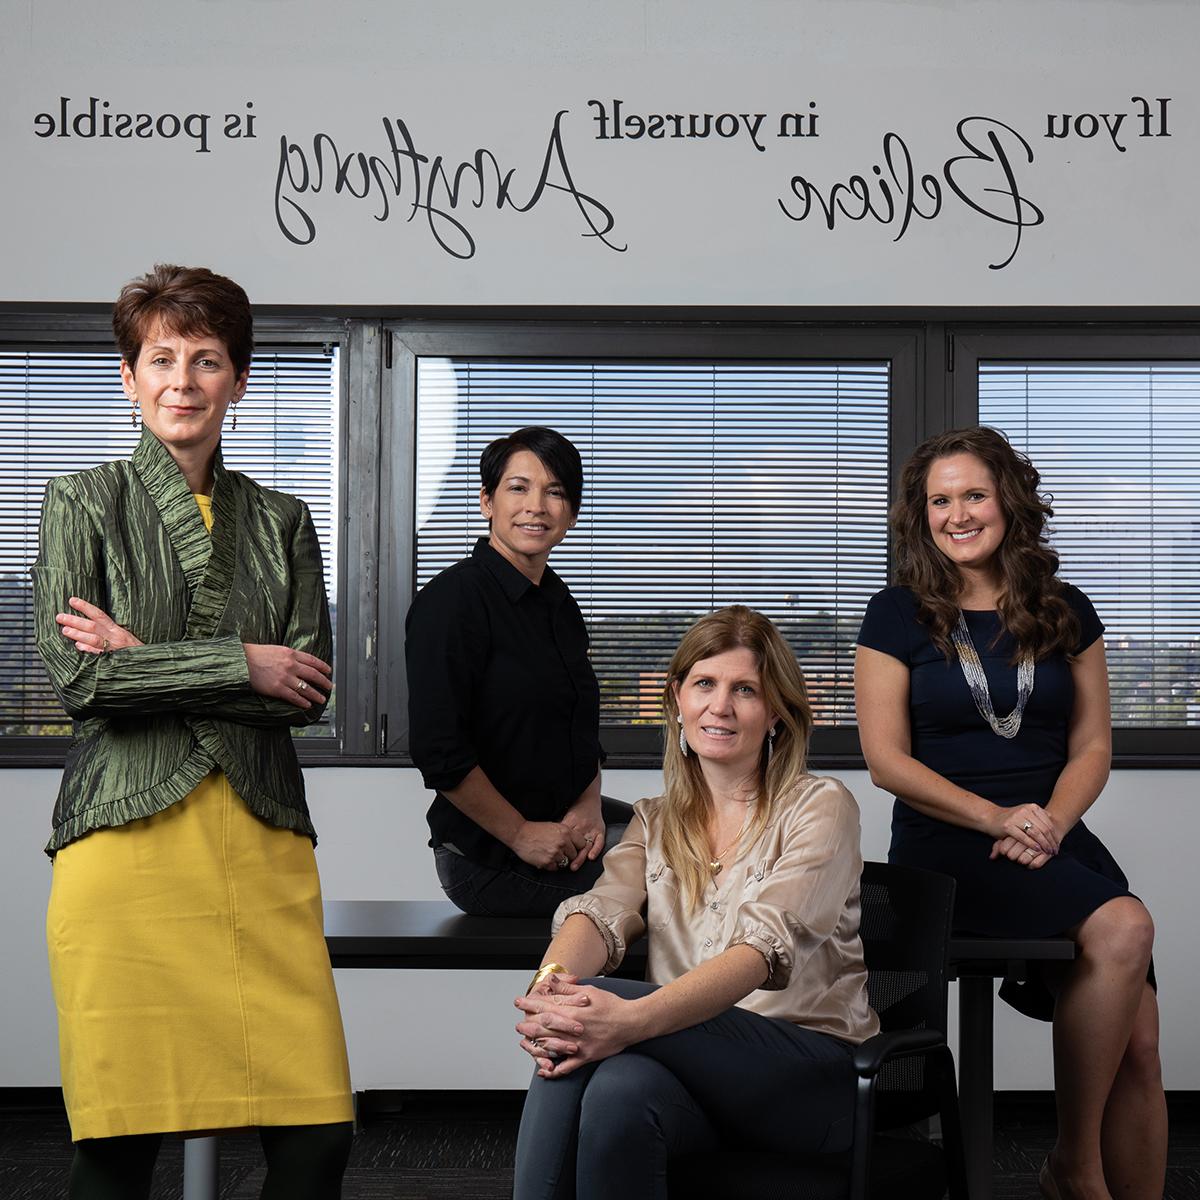 这张照片是四个穿着职业装的女人在写着这句话的墙前摆姿势, “如果你相信自己，一切皆有可能”